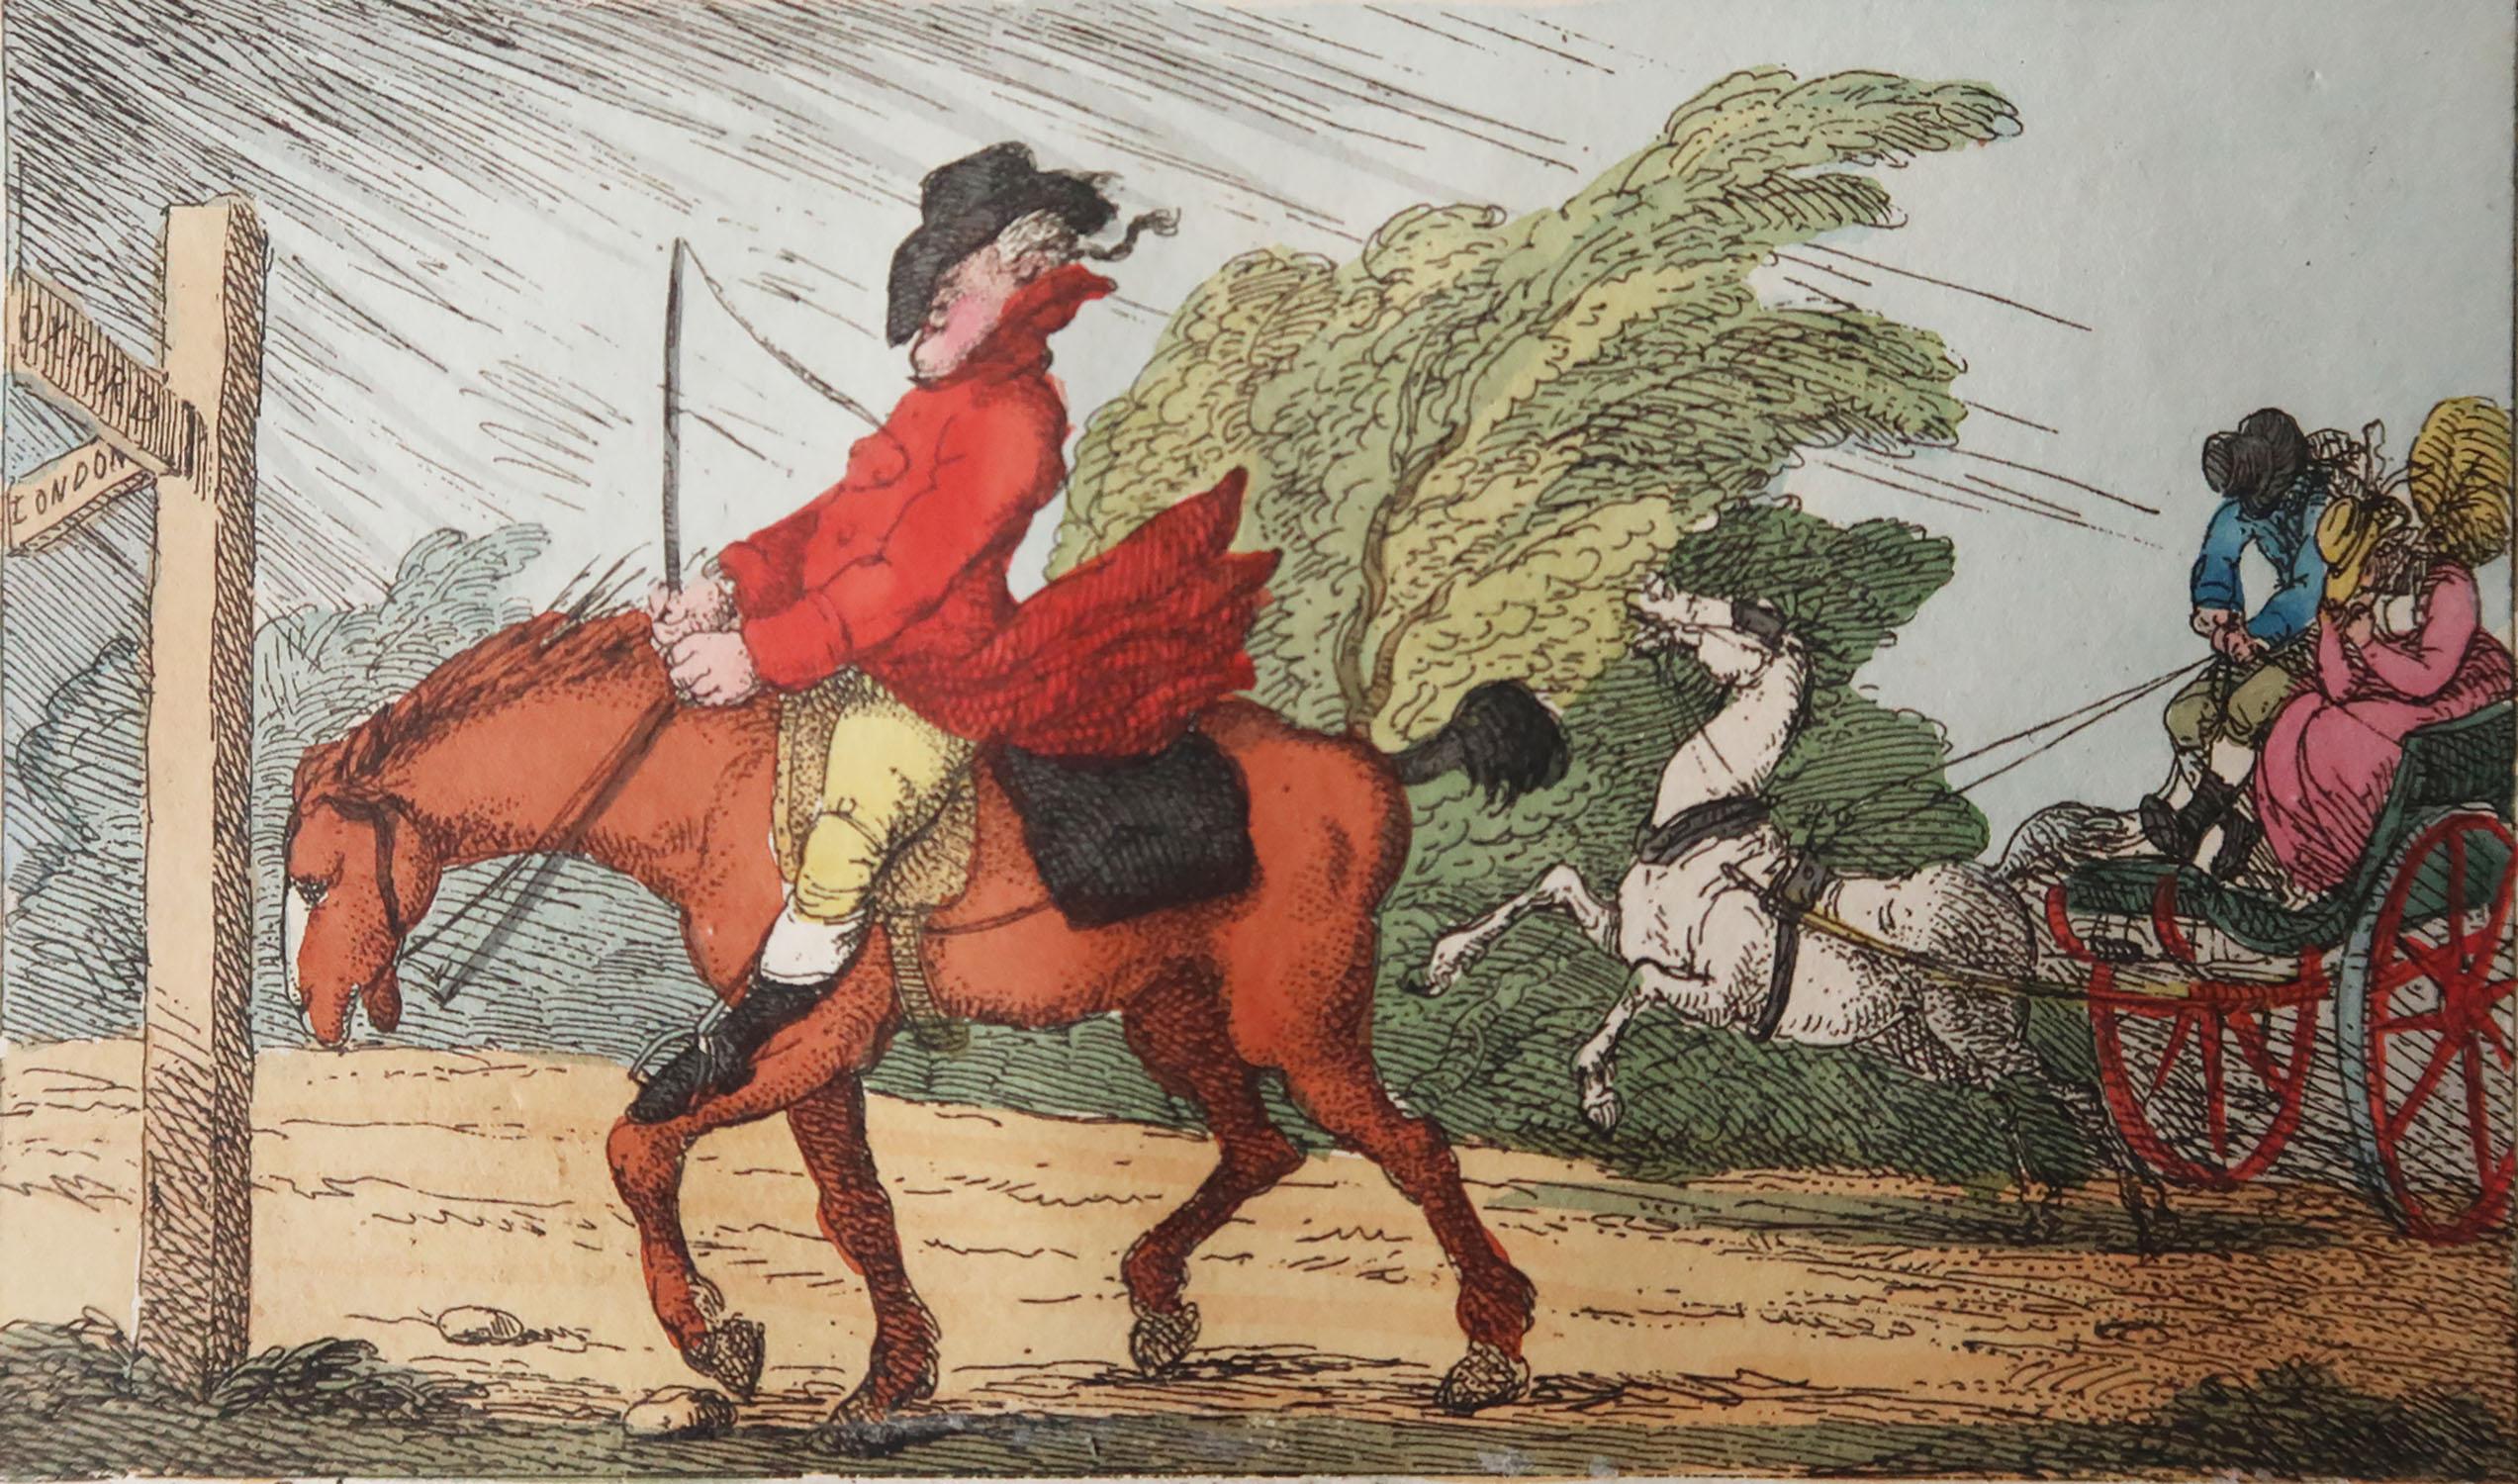 Belle image de Thomas Rowlandson 

Gravure sur cuivre avec couleur originale à la main

Publié par Thomas Tegg, 1808

Non encadré.





